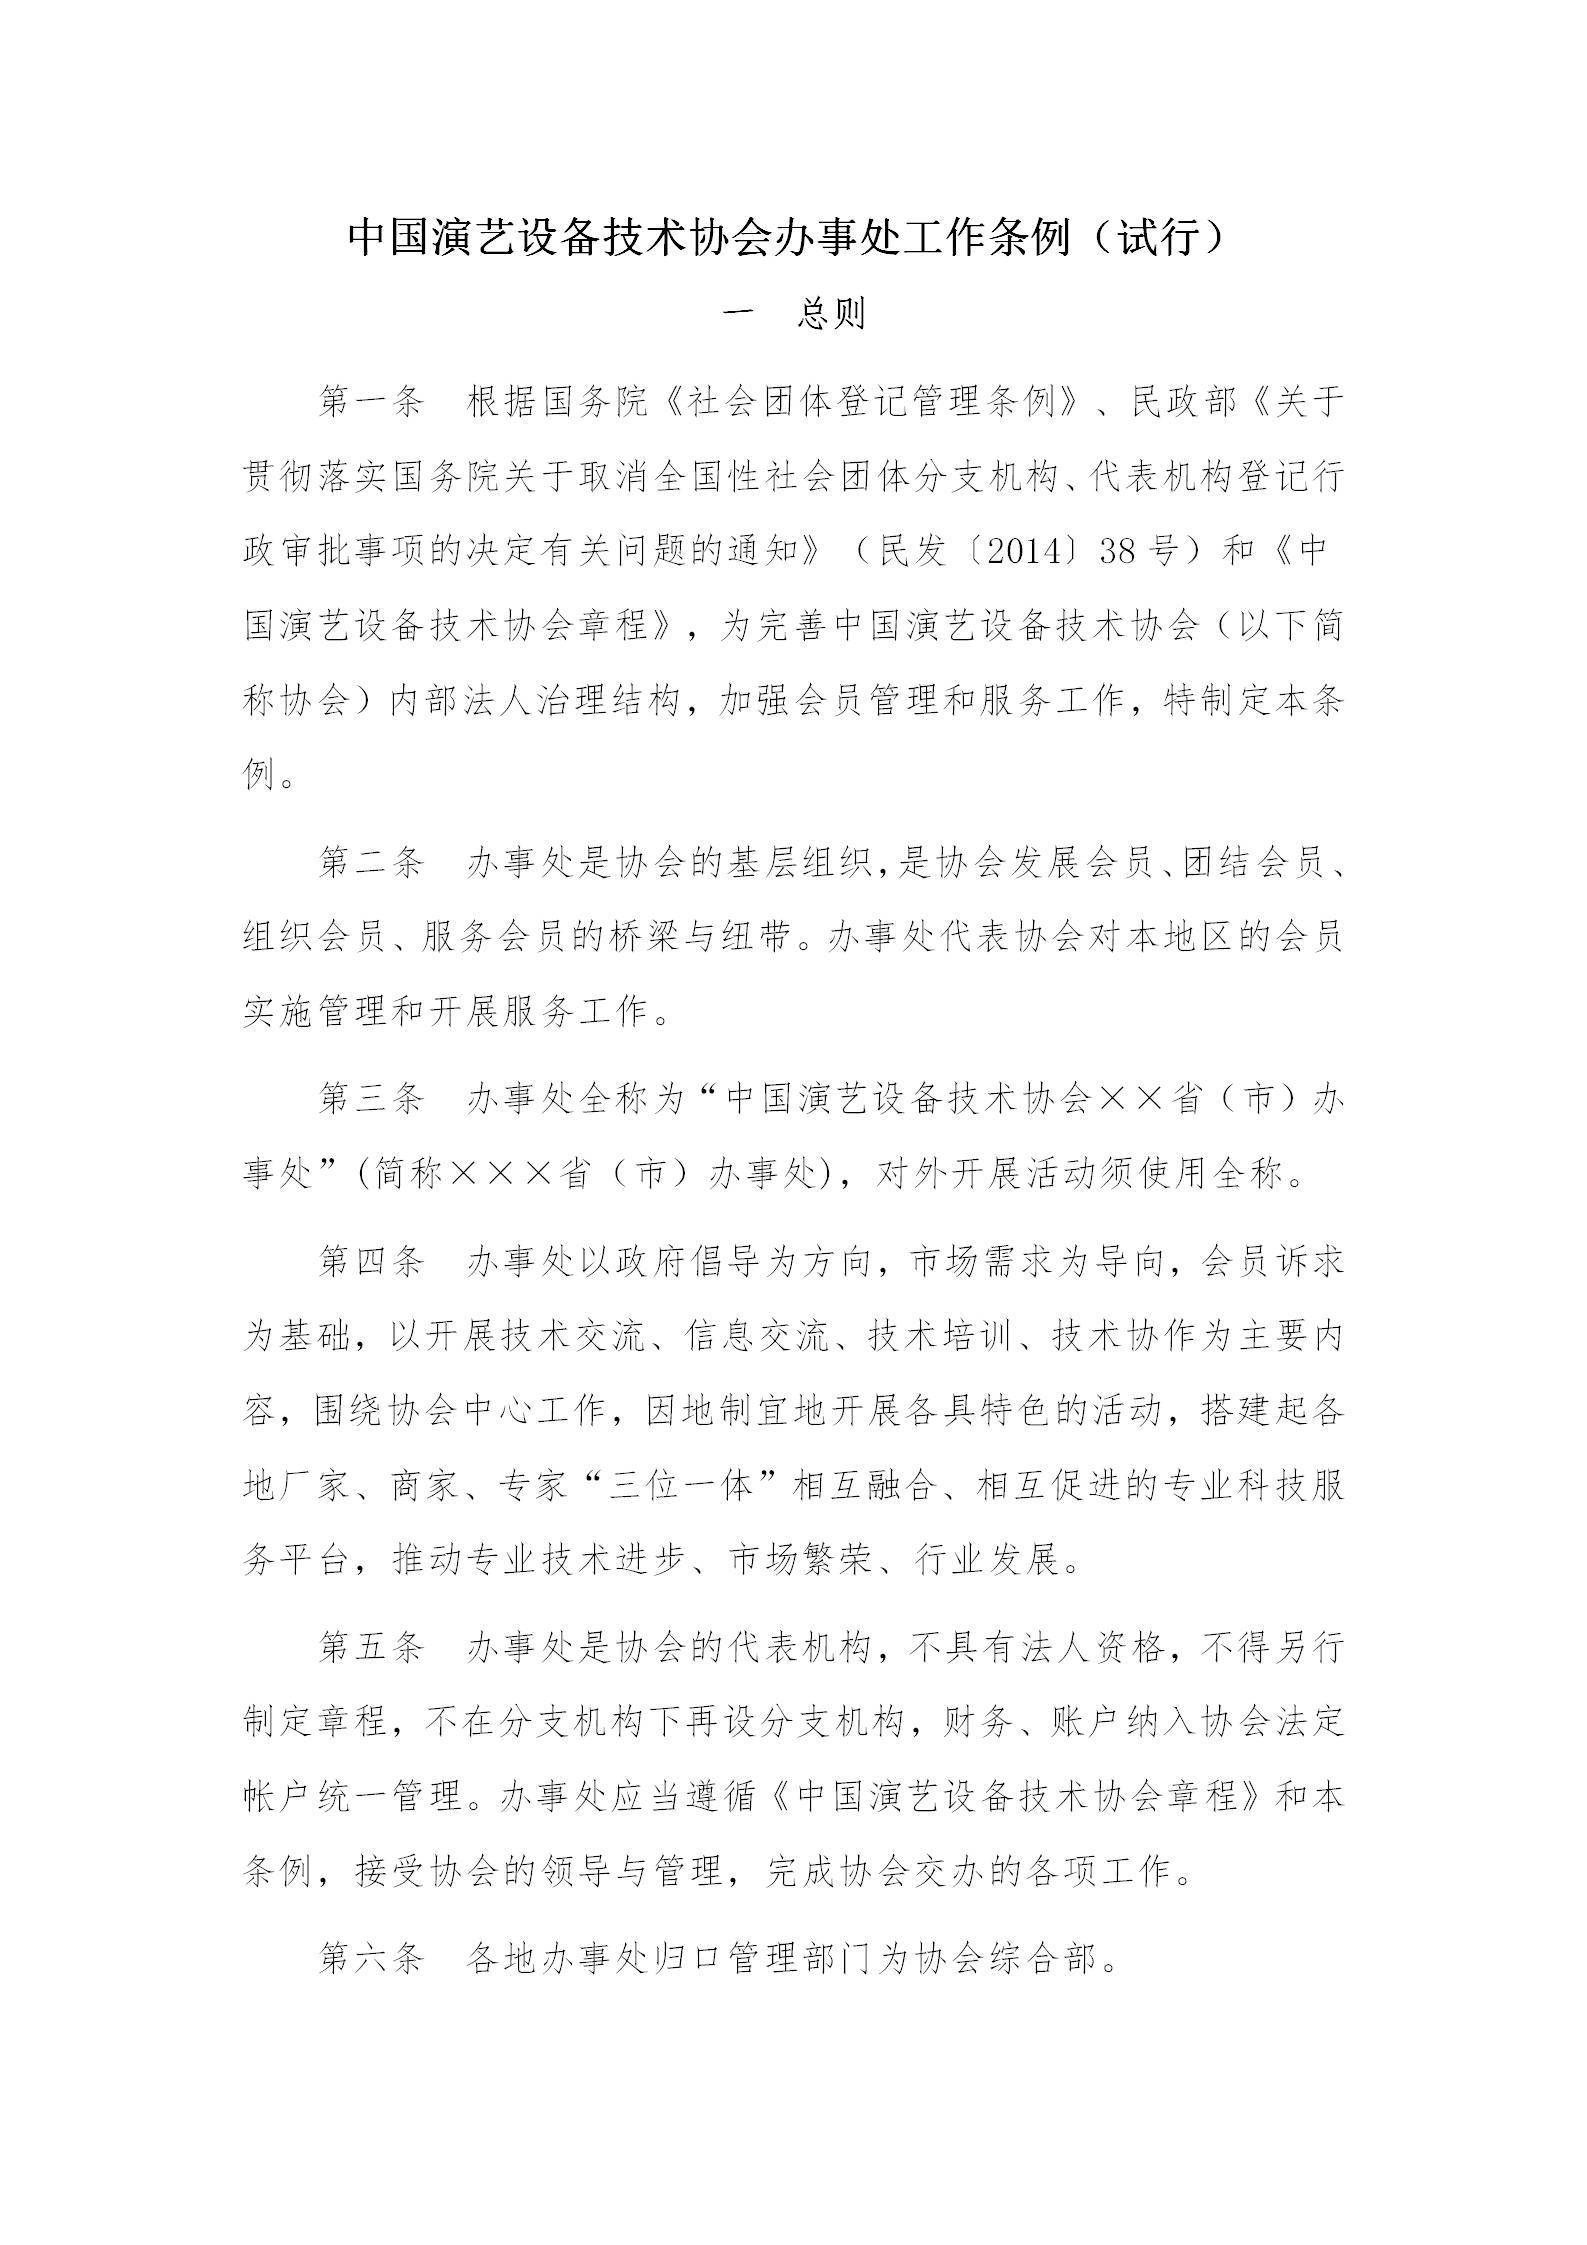 中国演艺设备技术协会办事处工作条例_01.jpg